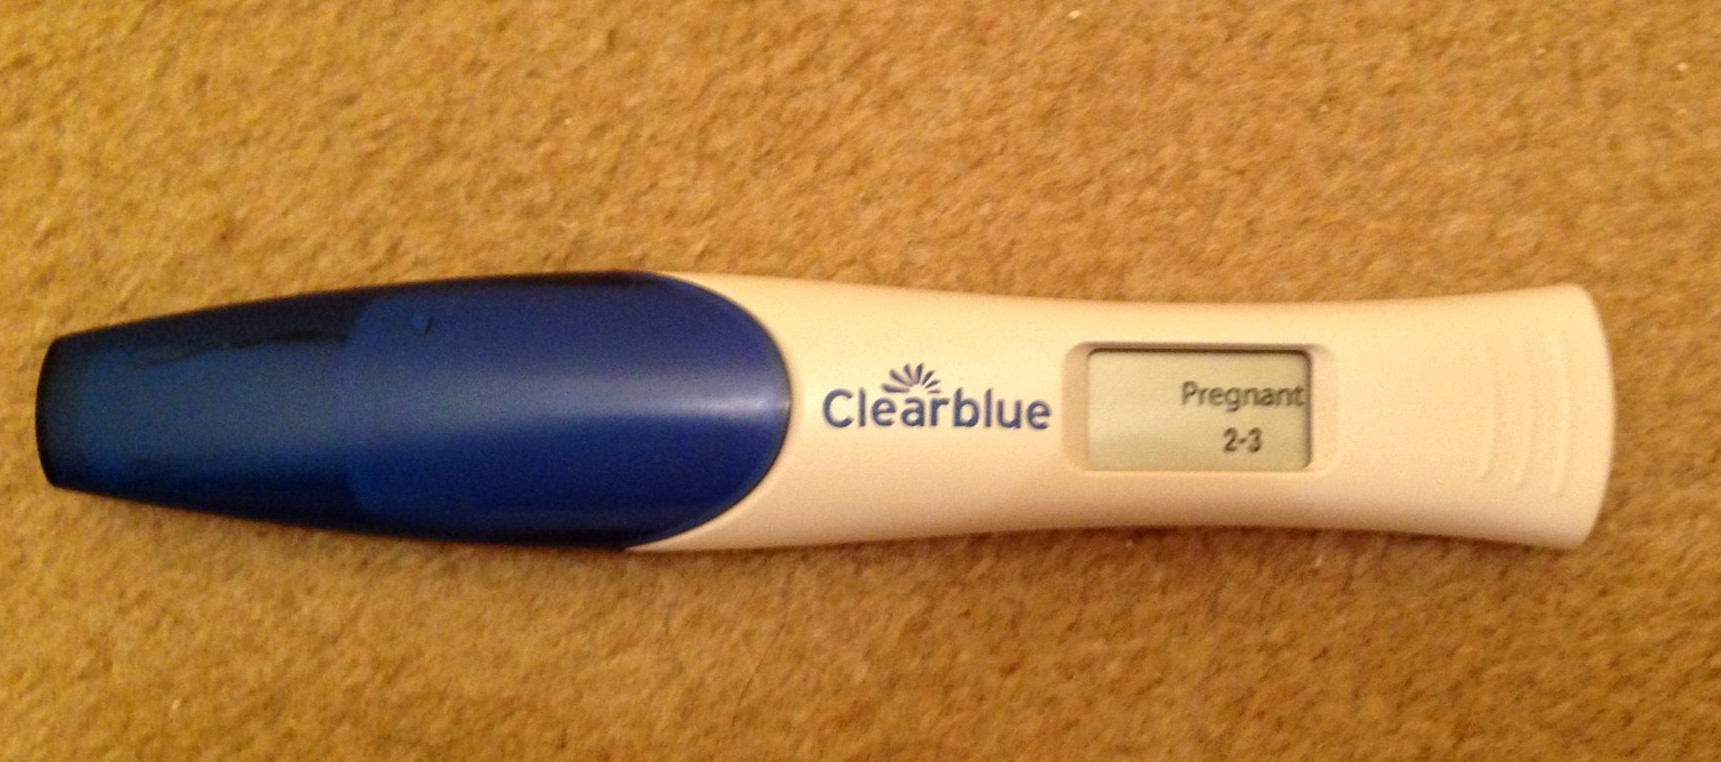 Электронный тест может ошибаться. Электронный тест на беременность. Clearblue Digital тест ошибки. Теста на беременность ошибочный электронный. Тест Clearblue может ли ошибиться на беременность.